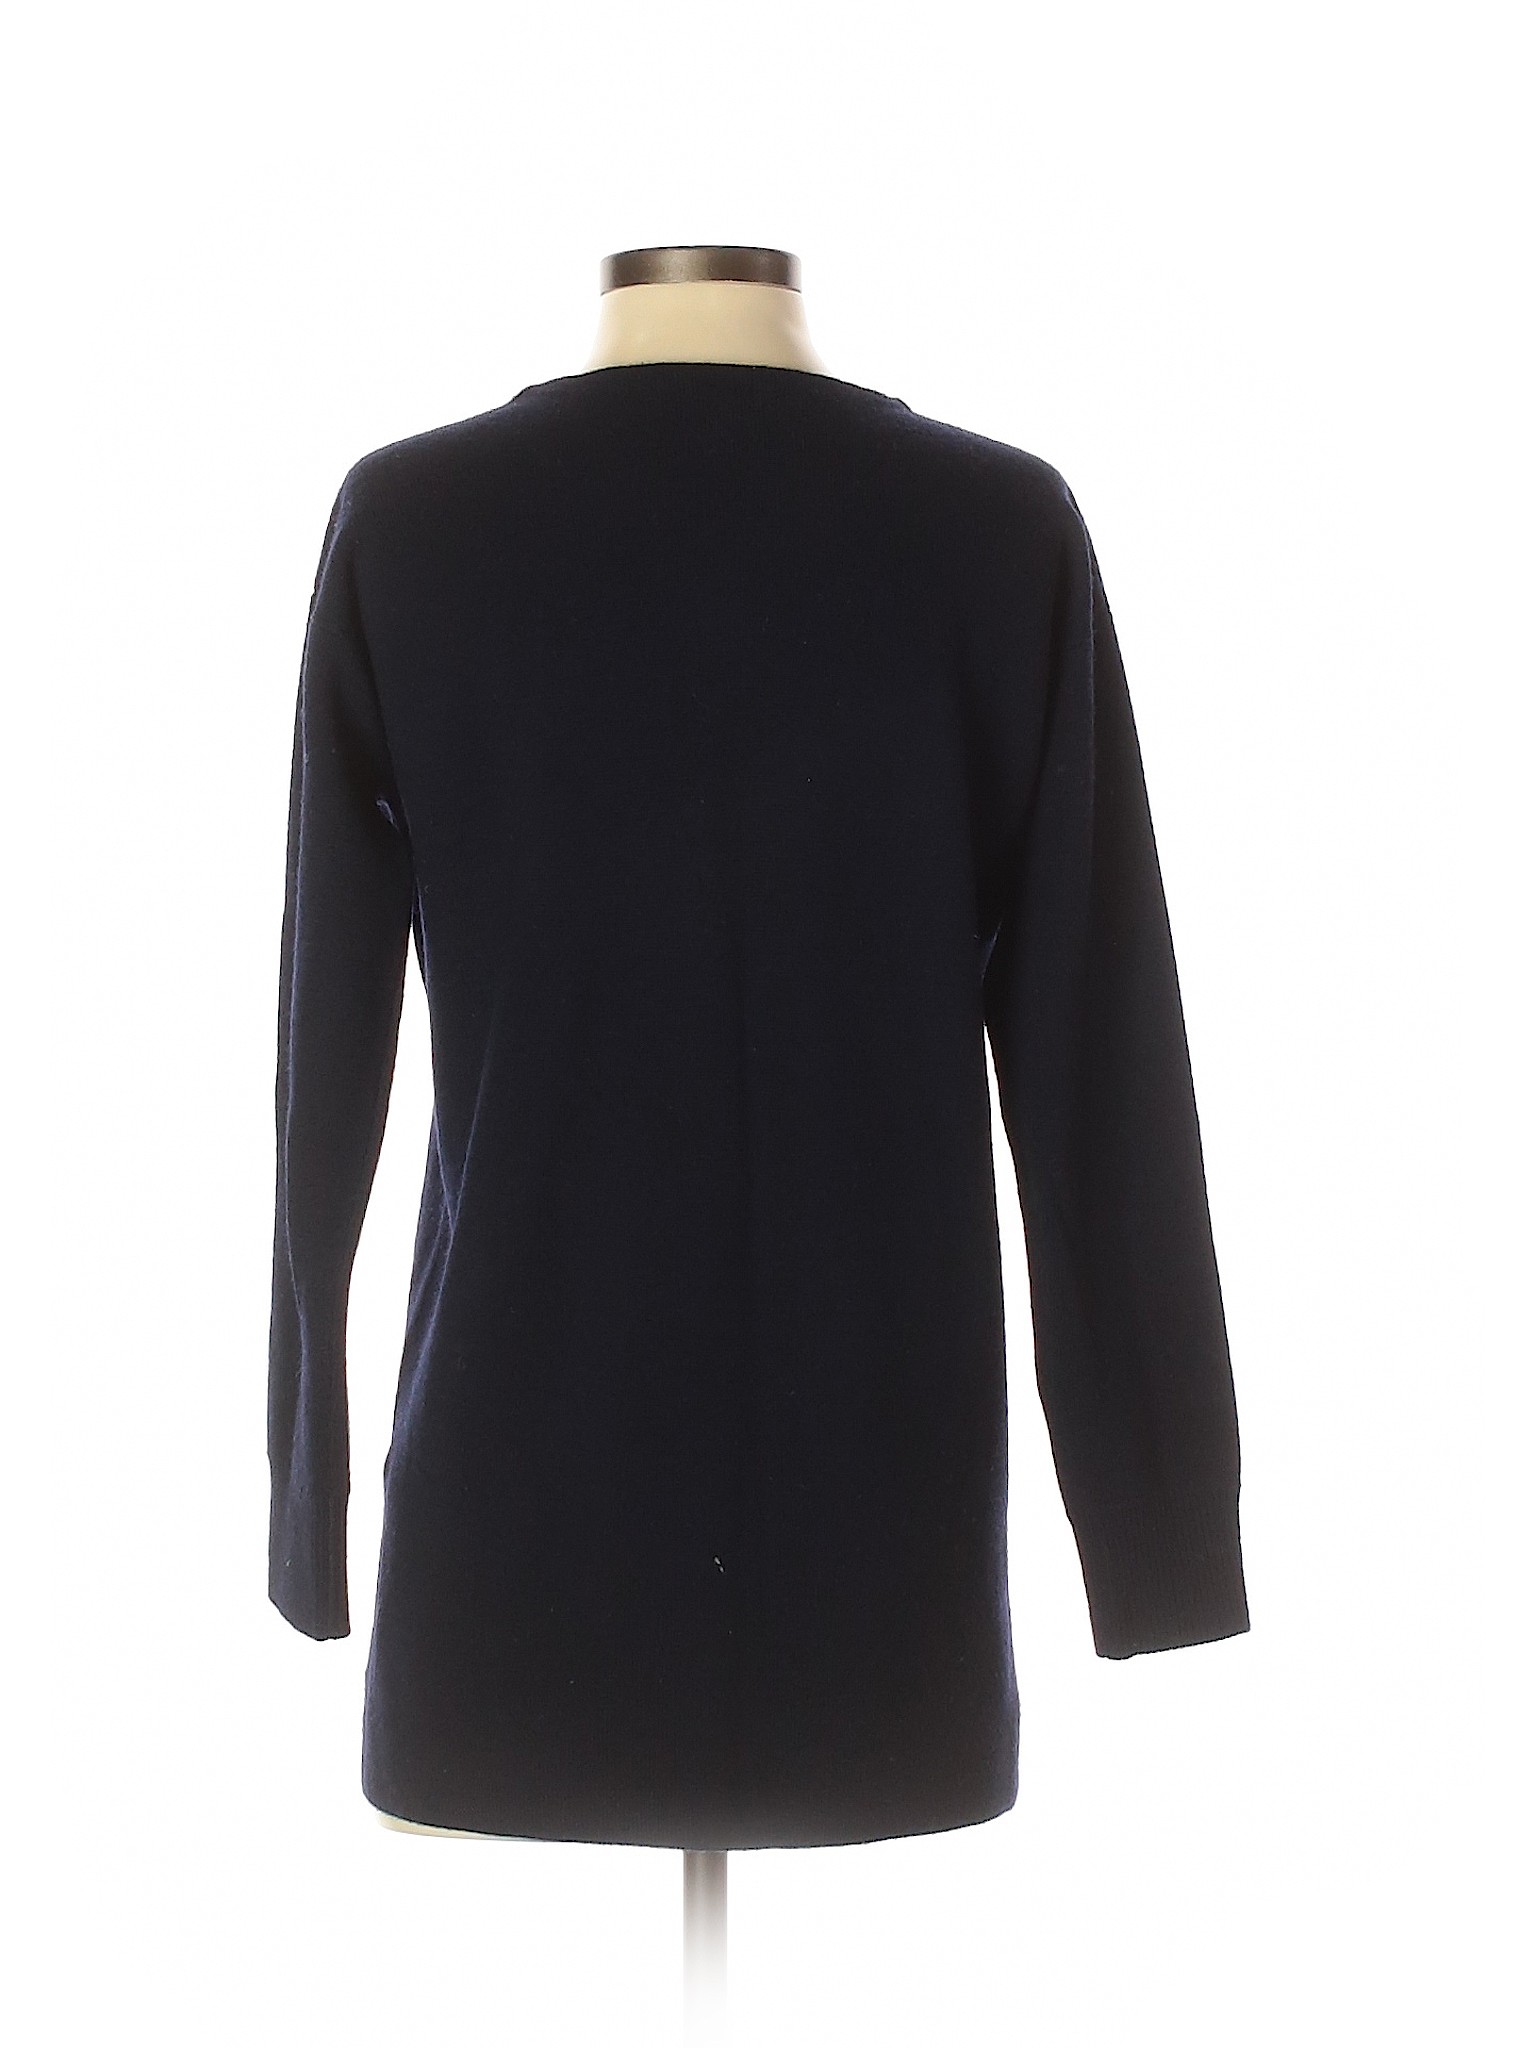 J.Crew Women Blue Wool Pullover Sweater XS | eBay